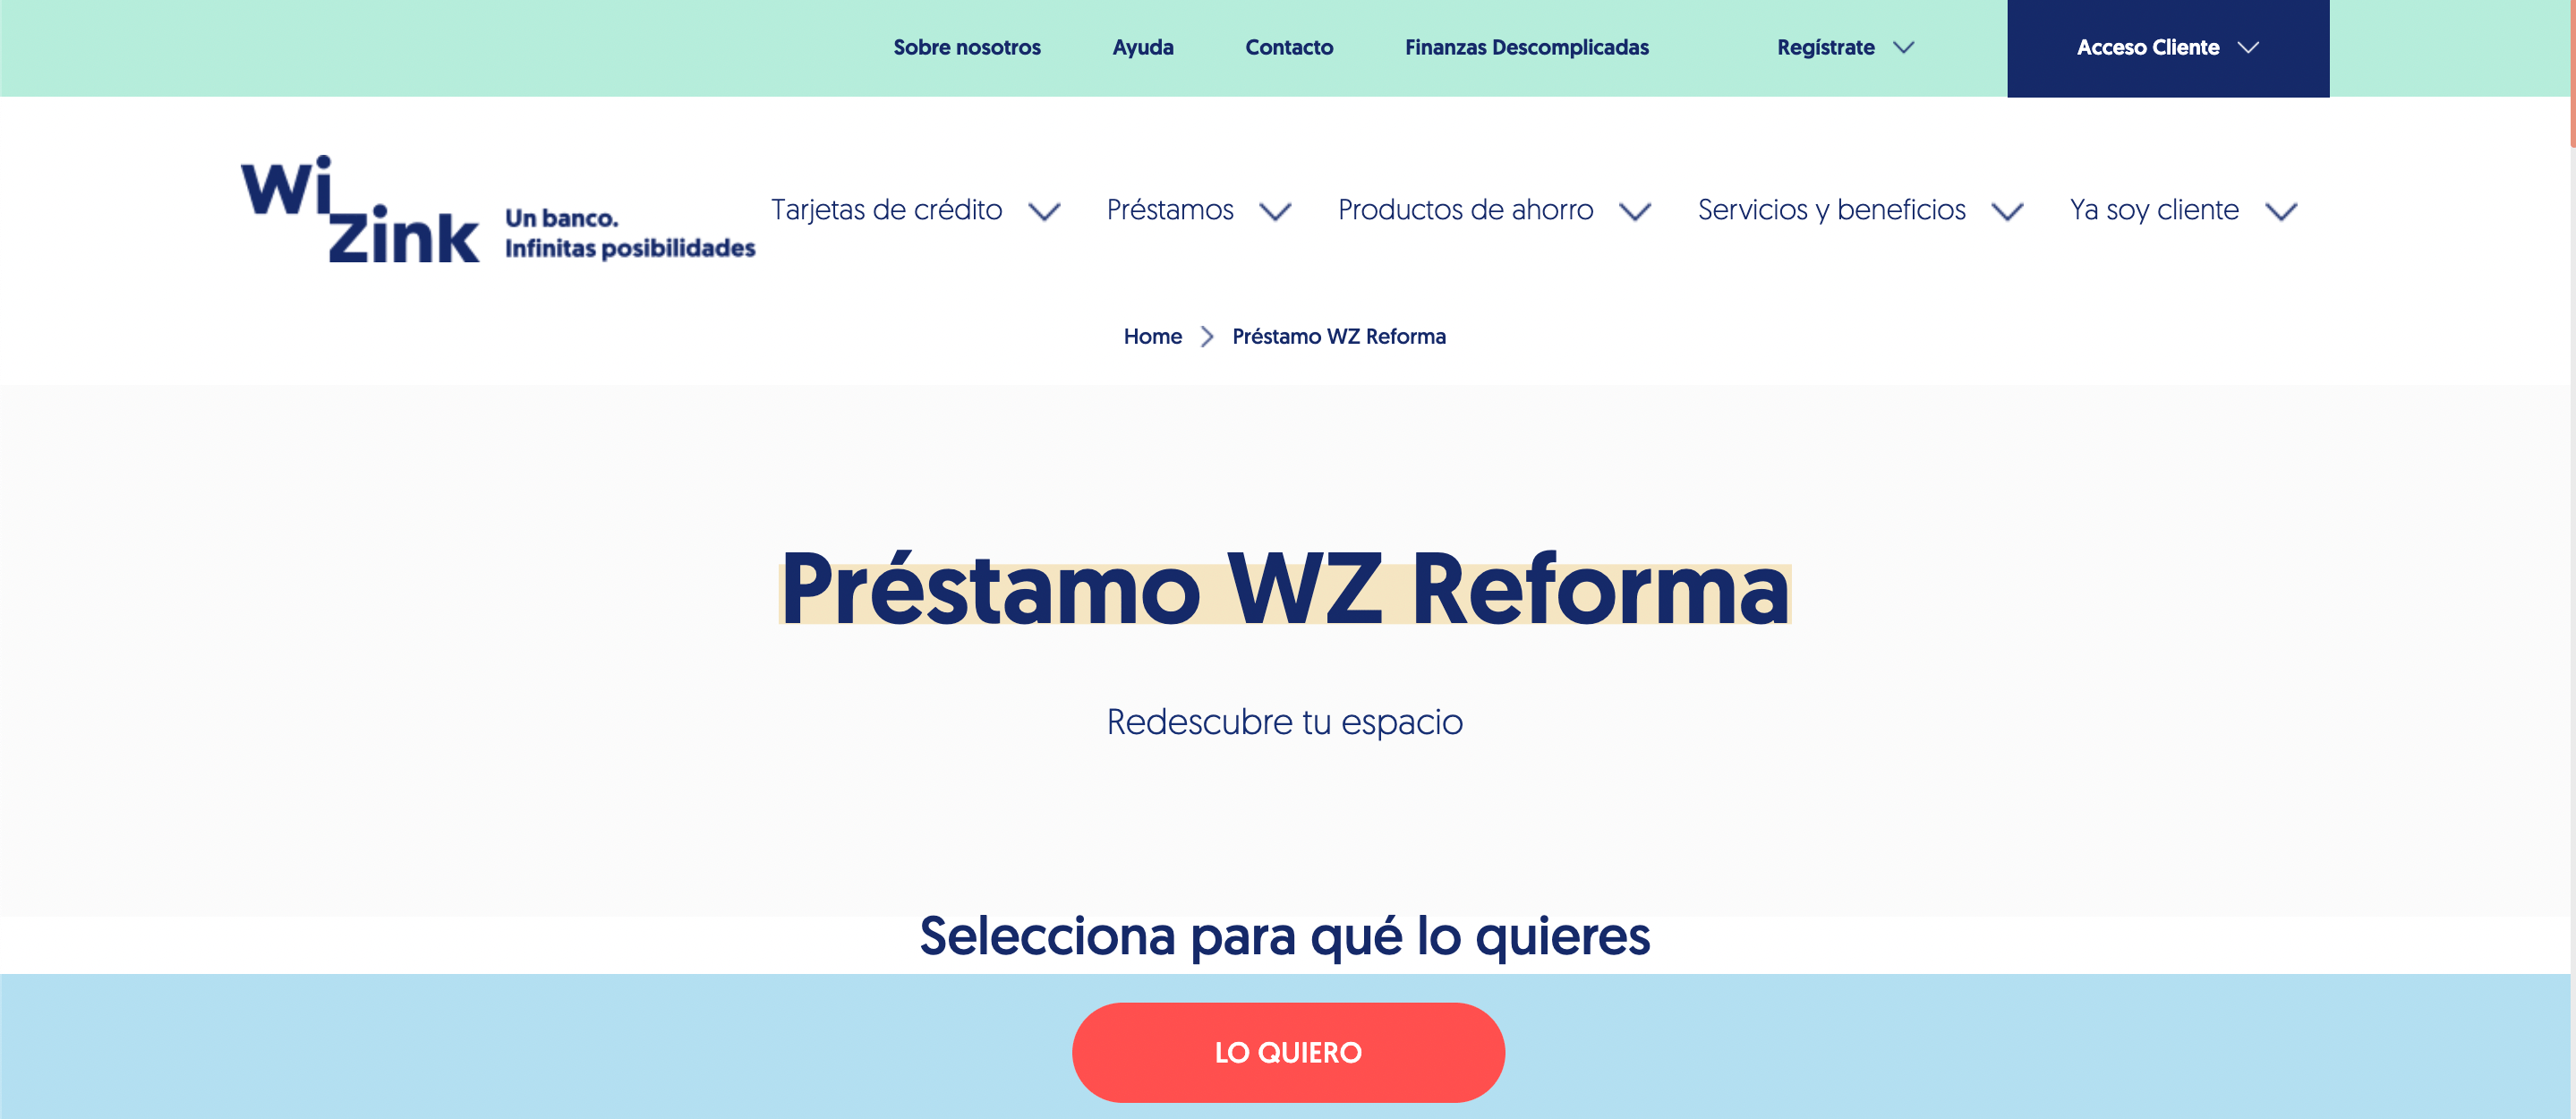 Wizink Préstamo WZ Reforma experiencia y discusión